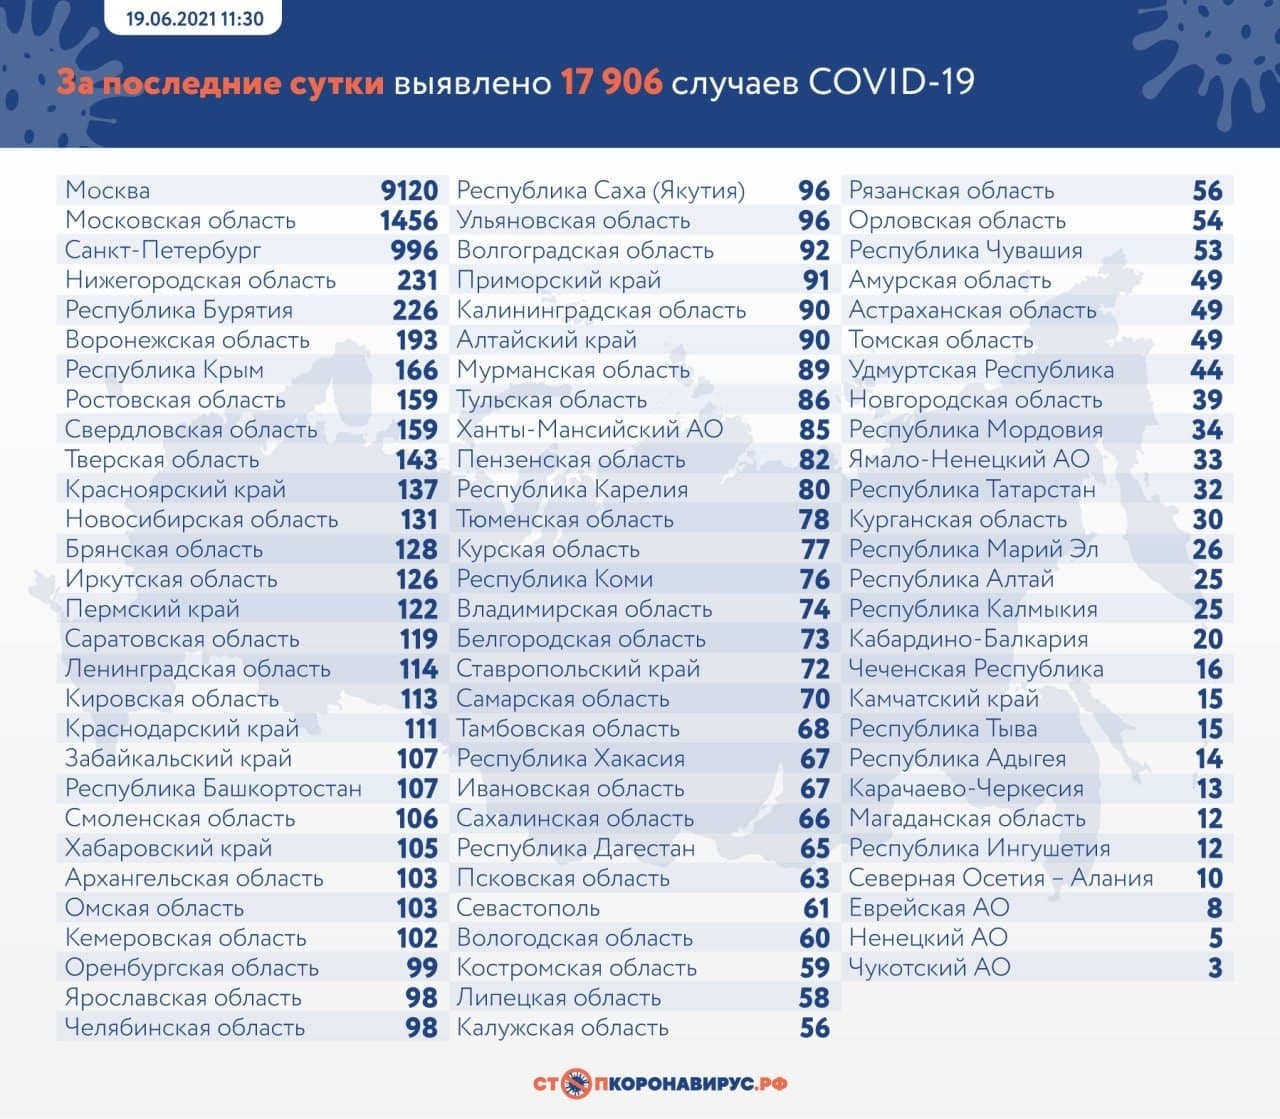 Воронежская область по количеству заболевших COVID-19 за сутки находится на 6-м месте в России